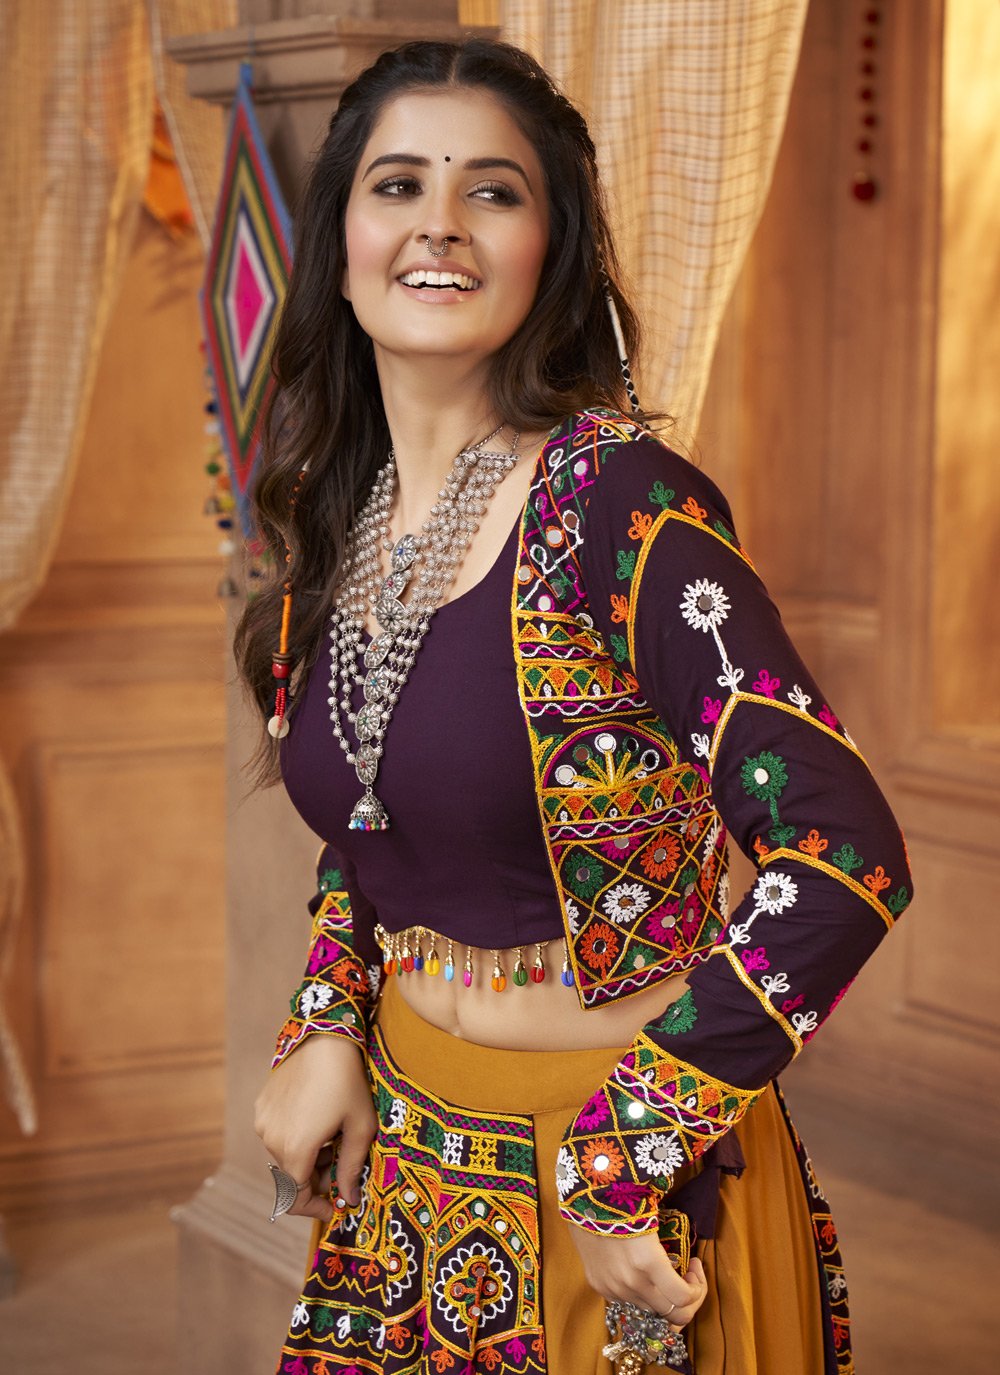 Buy Online Designer Indian Lehenga Choli in USA – Page 2 – Roop Sari Palace